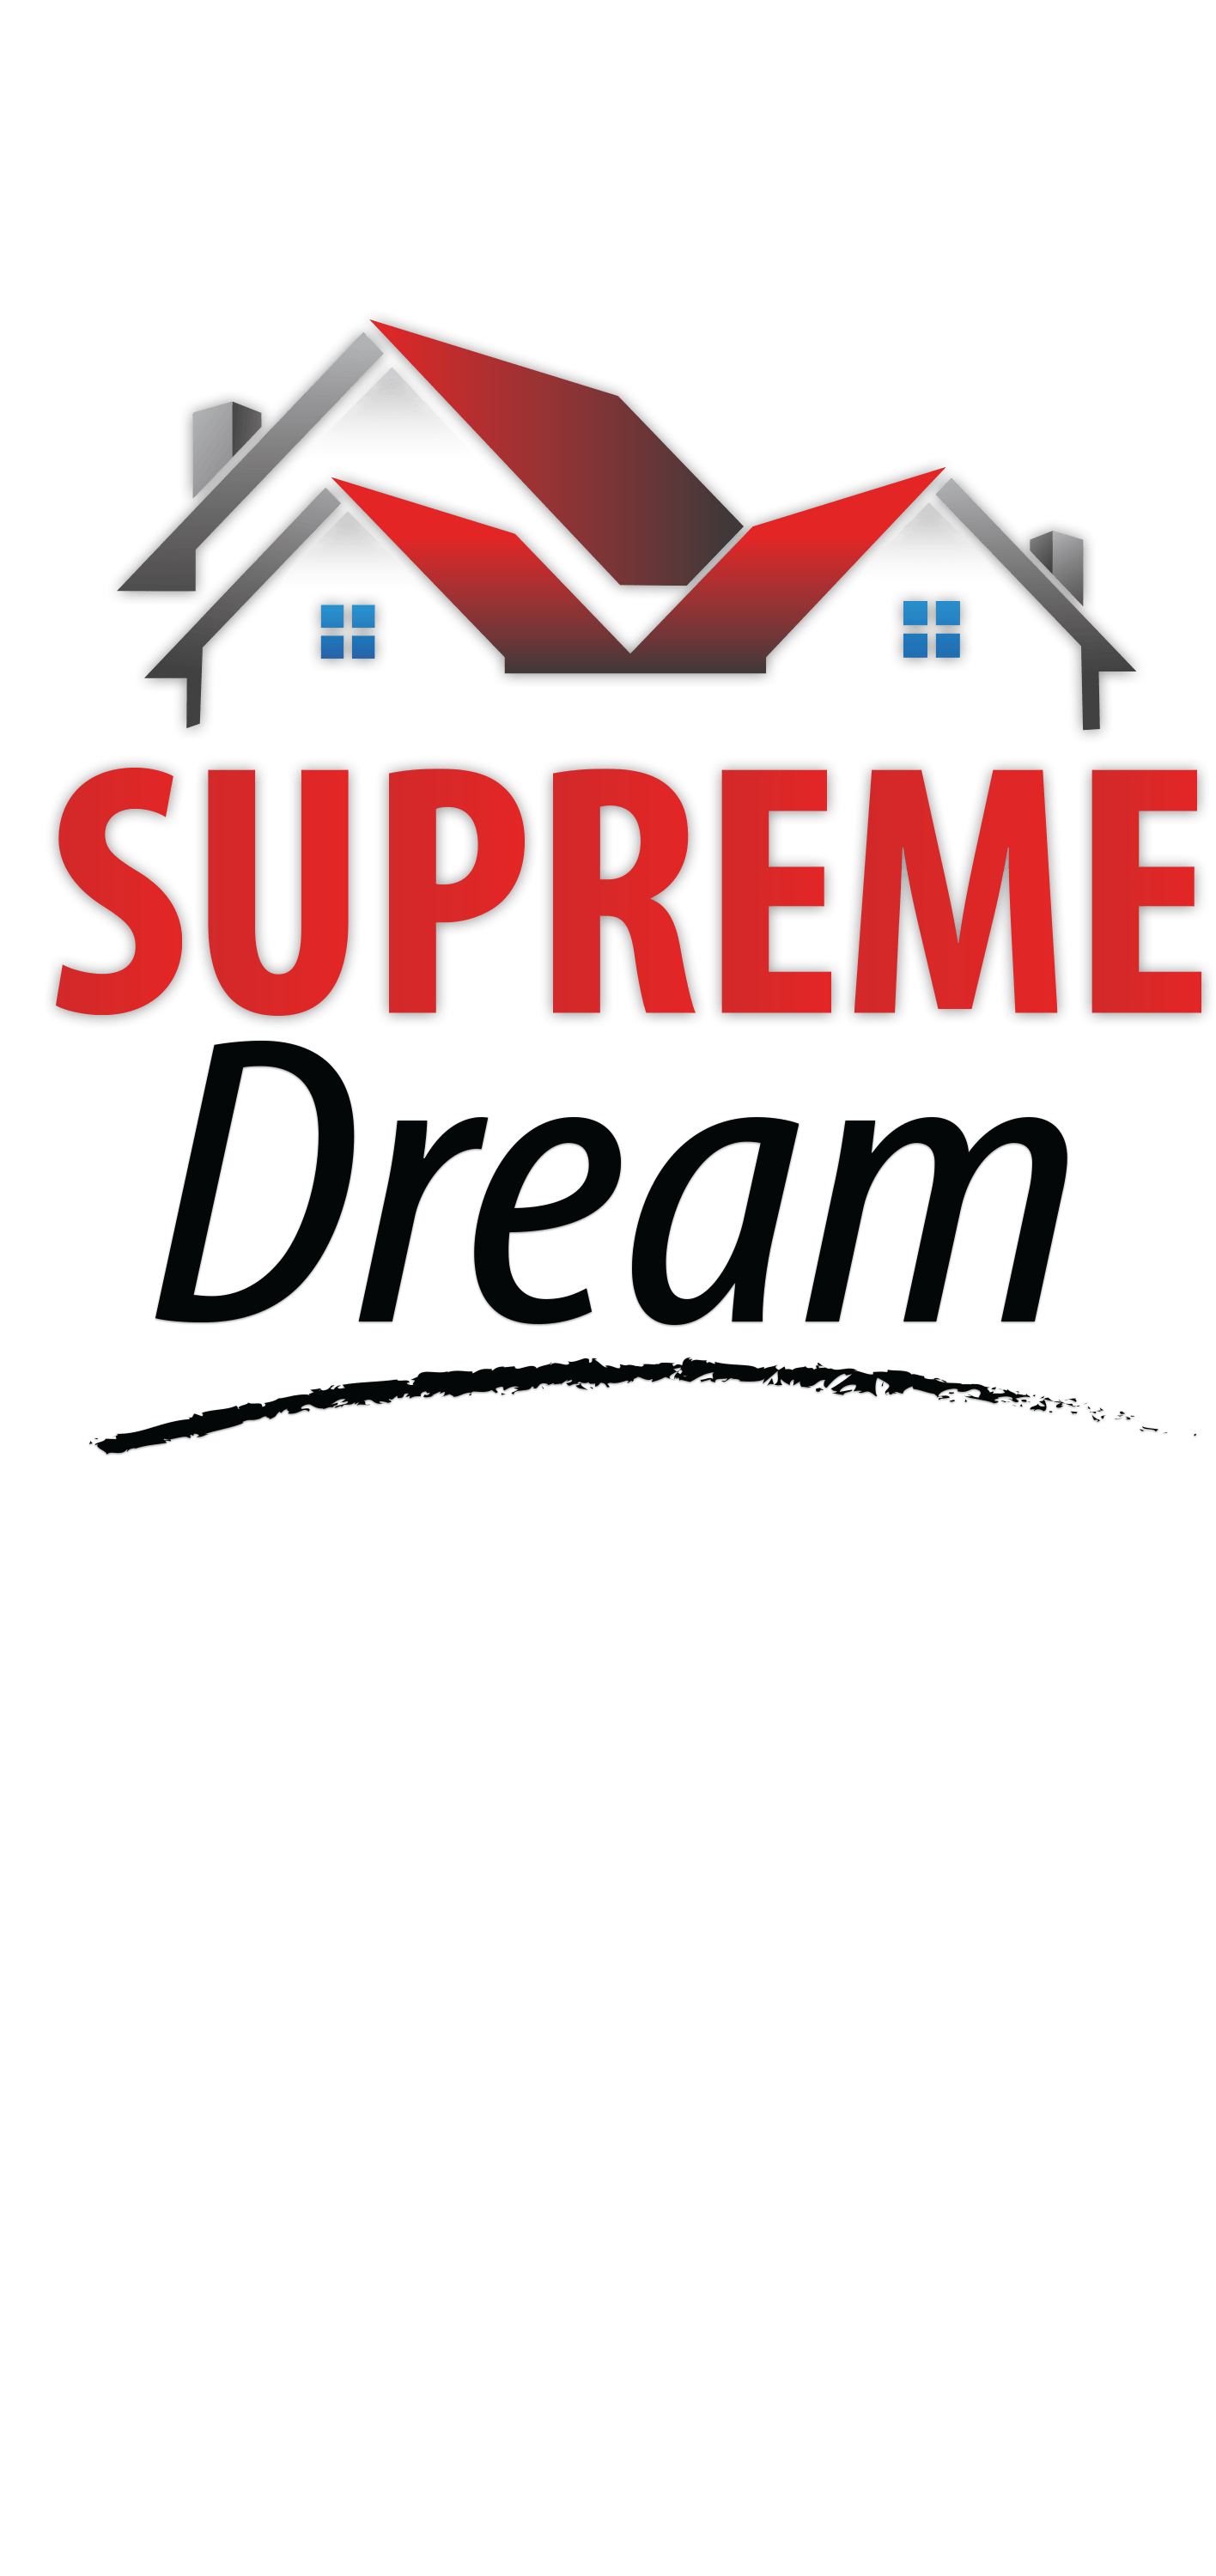 Supreme Loan Logo - Supreme-Dream-Stacked-Red Final - Supreme Lending Dallas